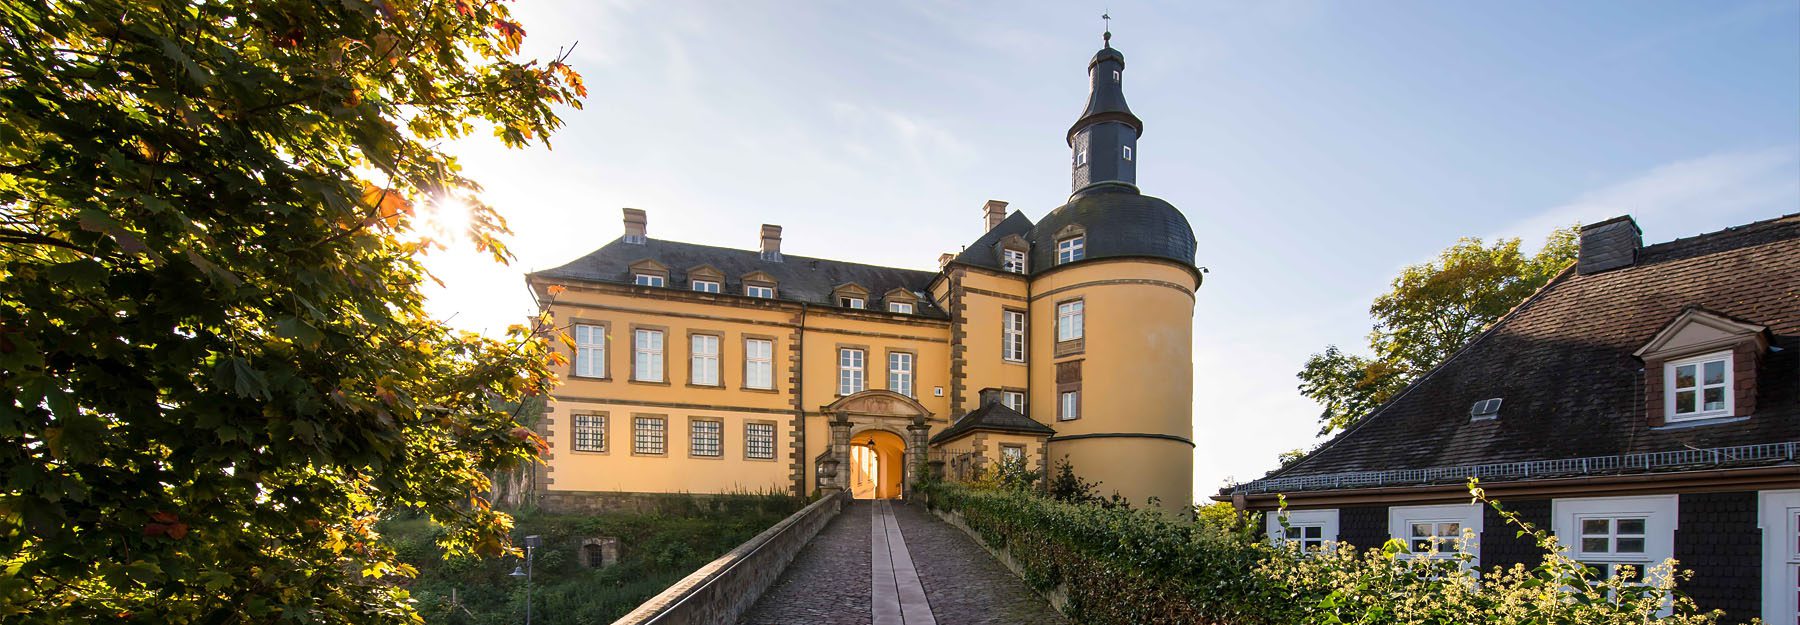 Zufahrt Schloss Friedrichstein in Bad Wildungen